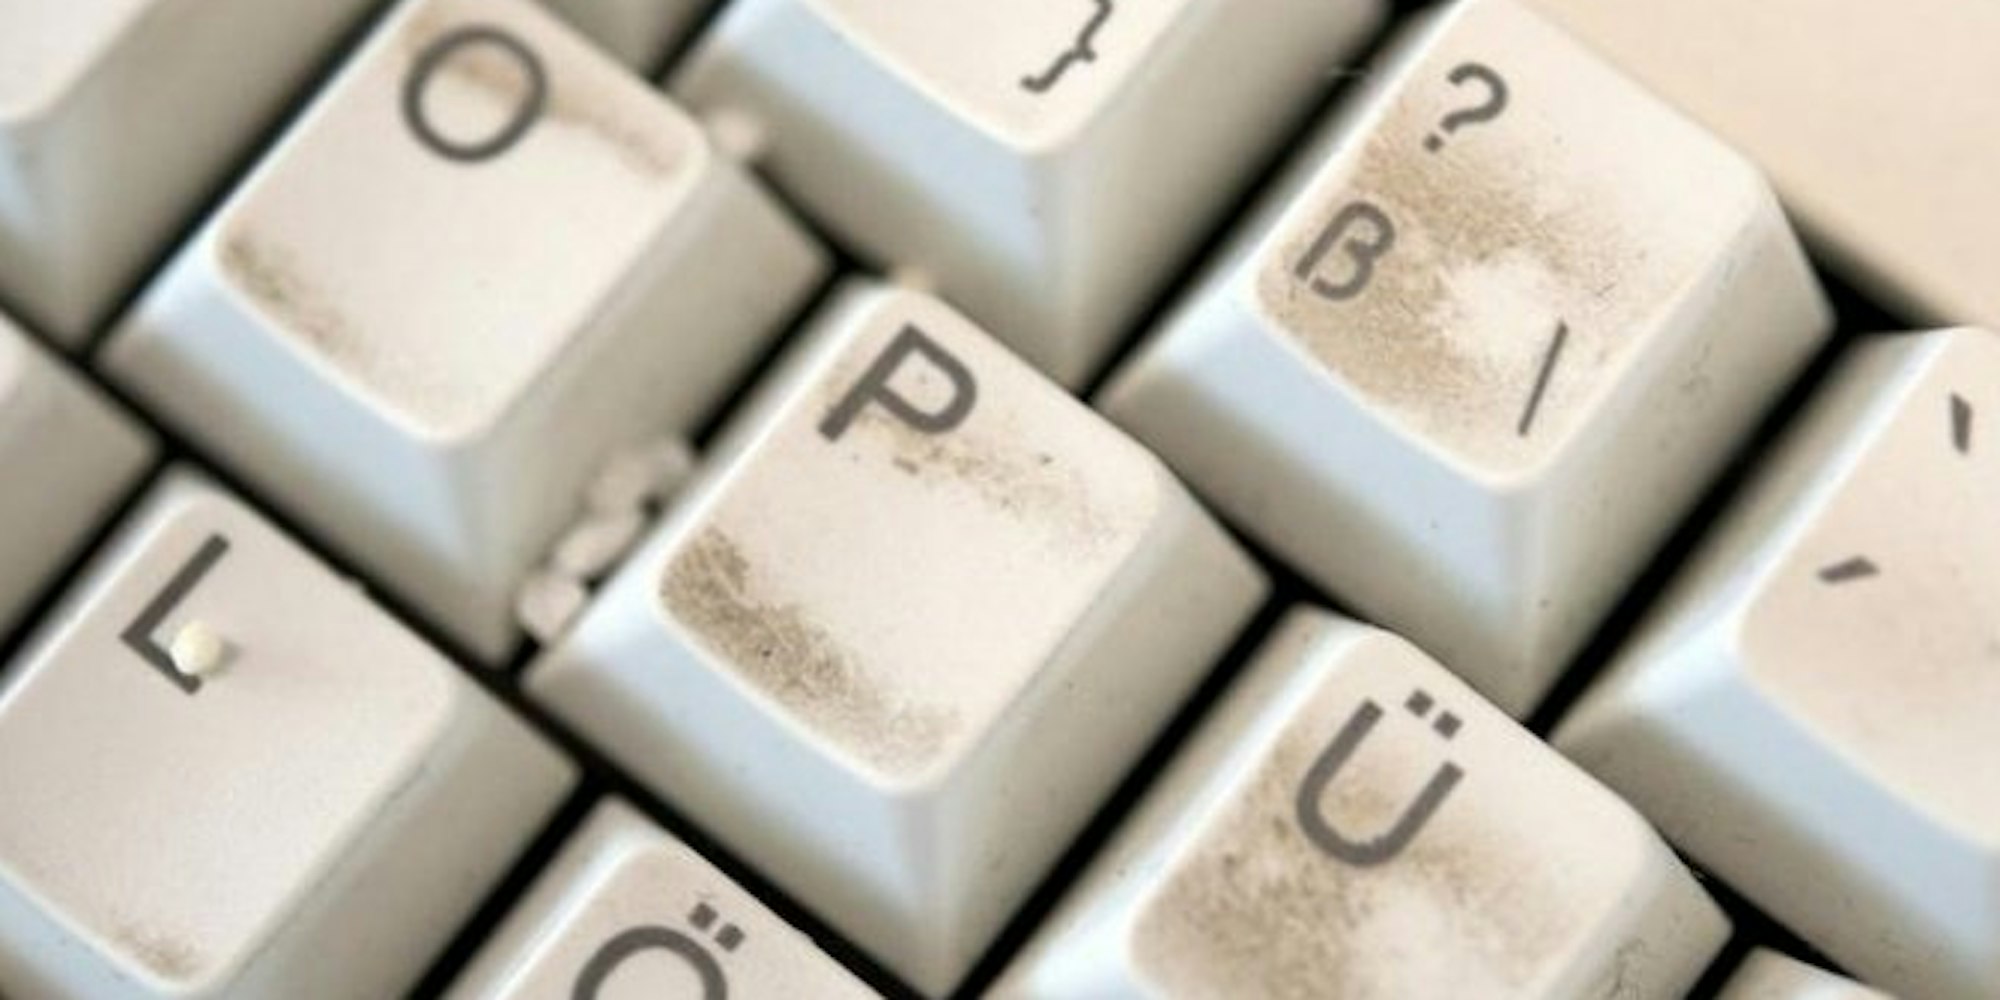 Tastaturen und PC-Mäuse sind häufig um ein Vielfaches stärker mit Keimen besiedelt als Toiletten.